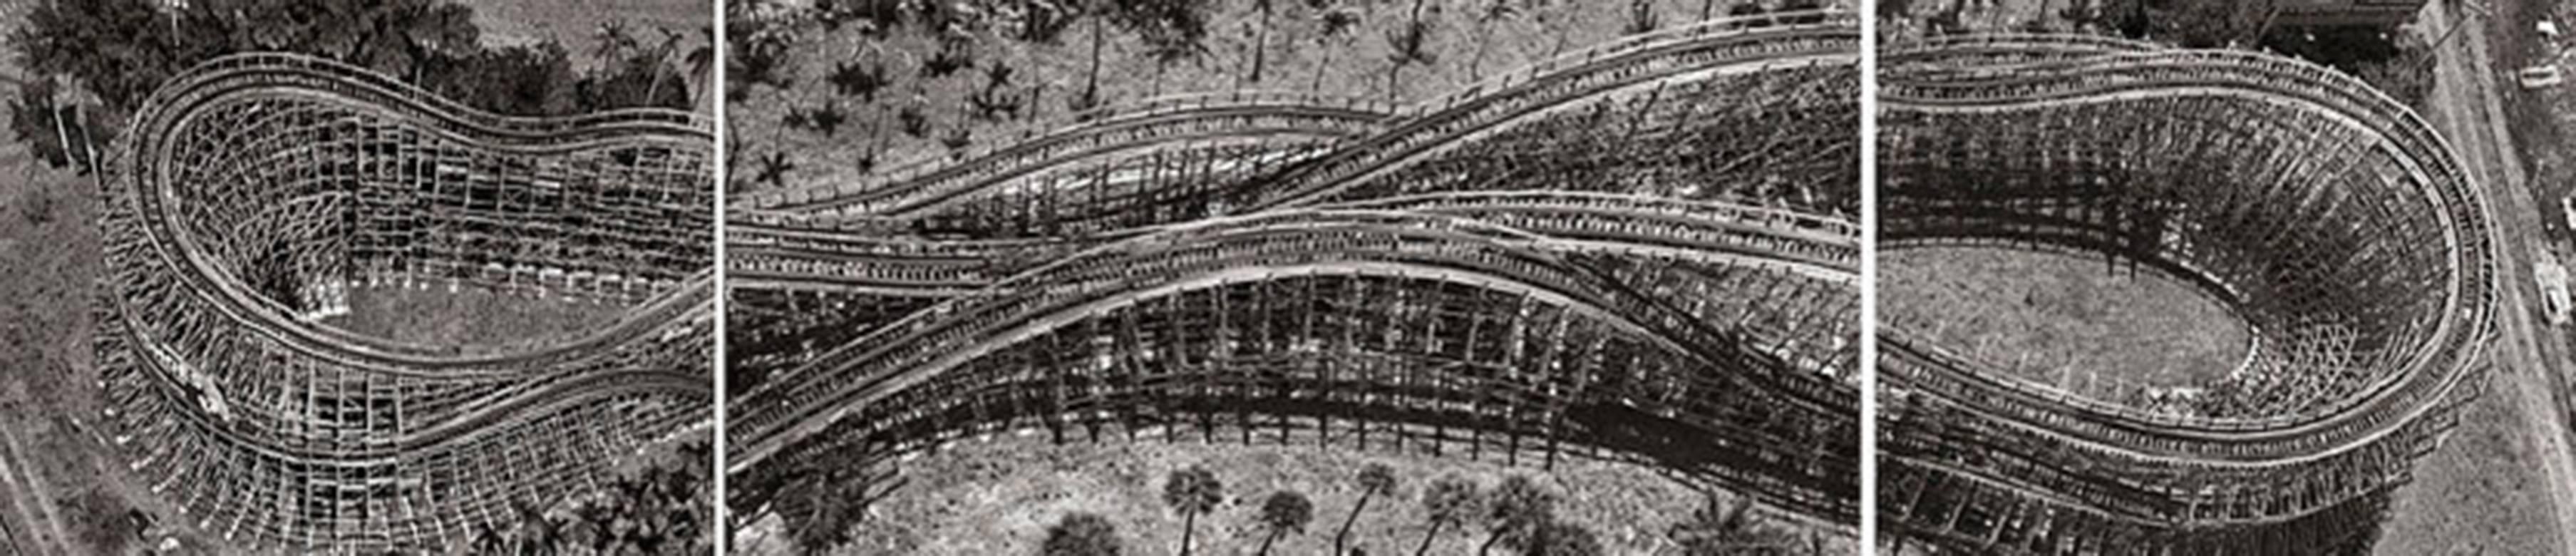 Achterbahn.  Luftbildfotografie Triptychon Schwarz-Weiß-Fotografie   (Grau), Landscape Photograph, von Jill Peters